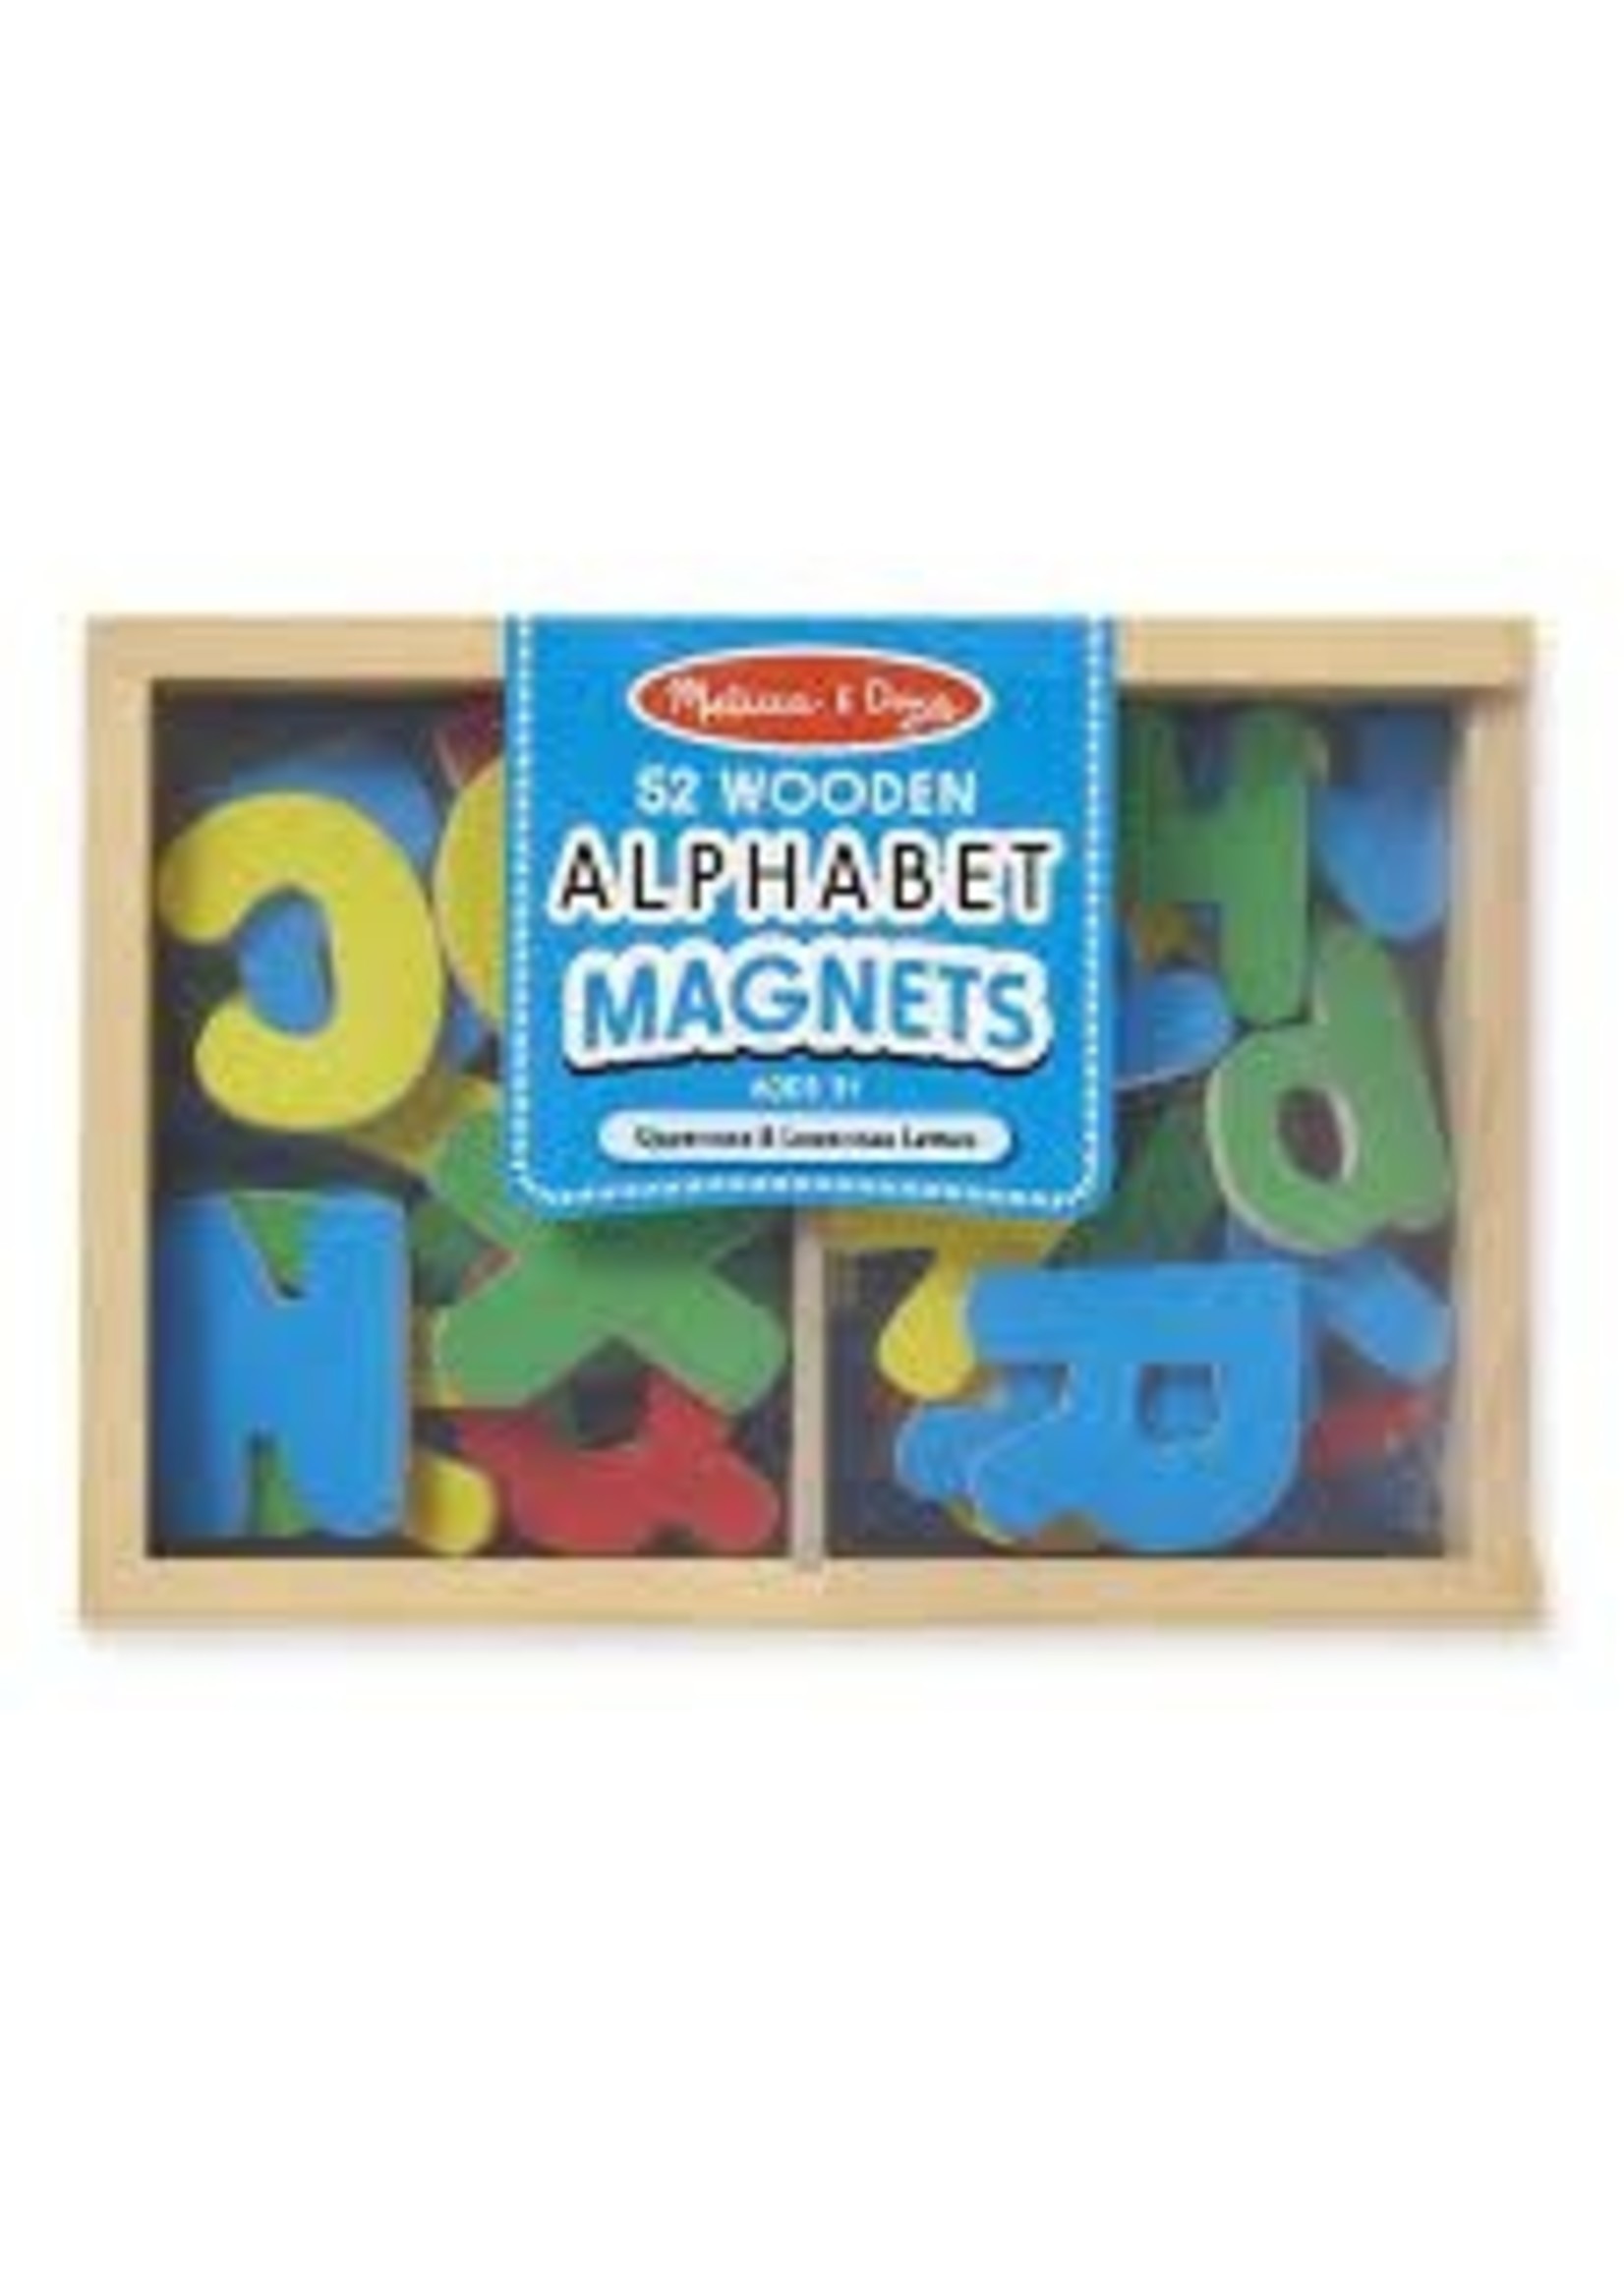 52 Wooden Letter Magnets